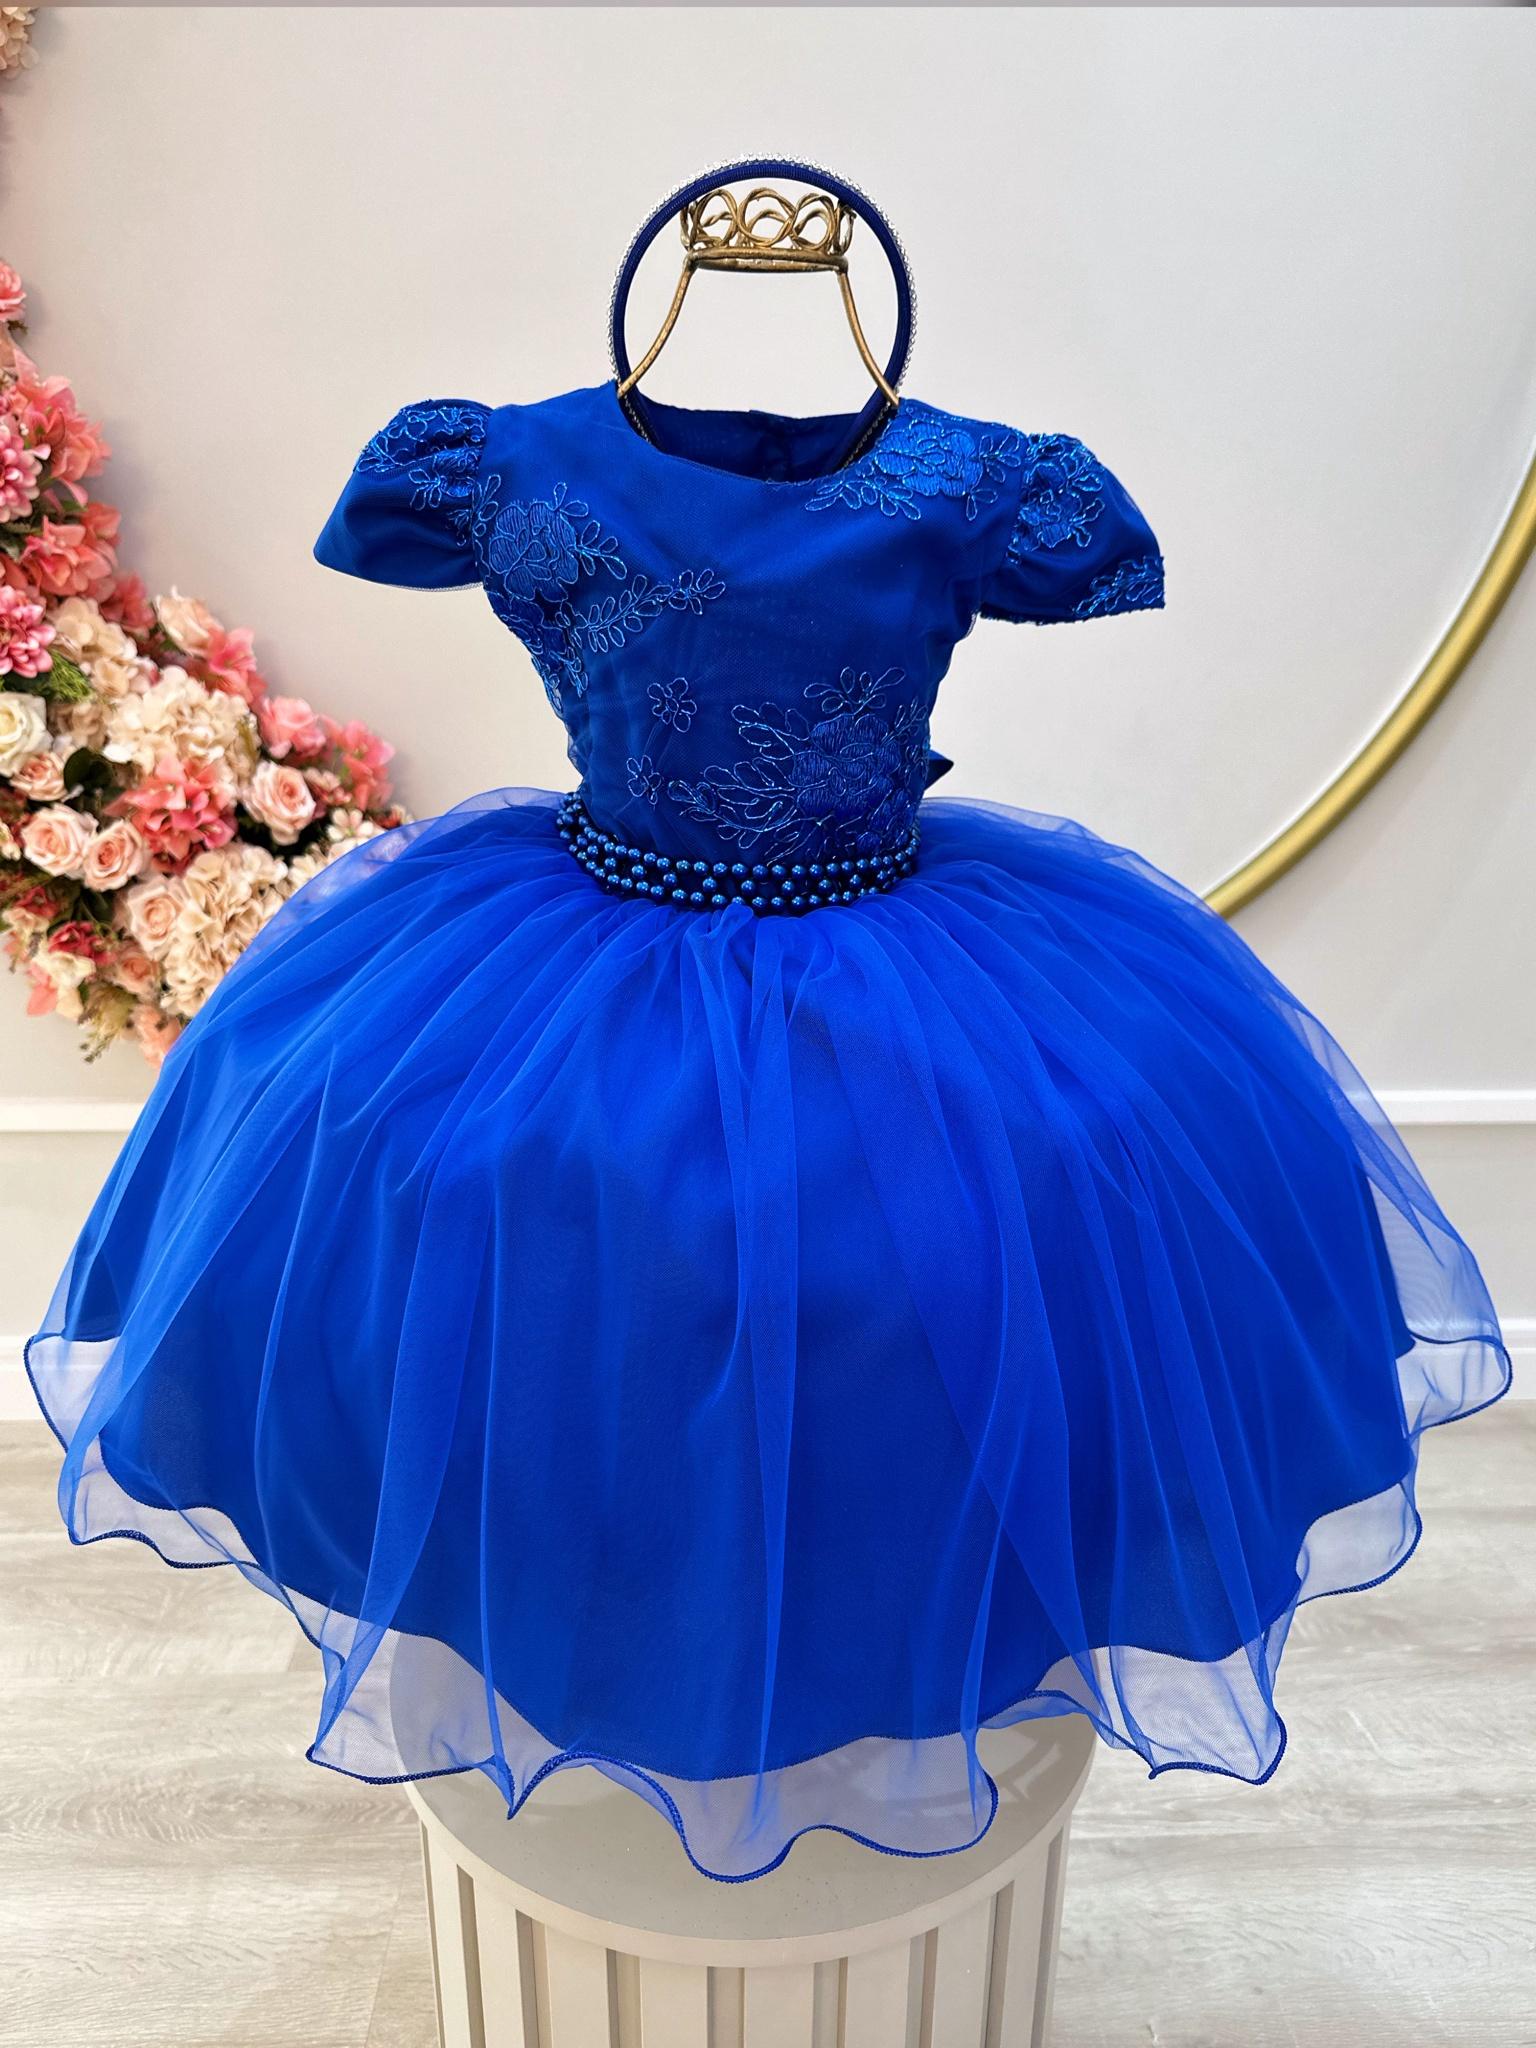 Vestido Infantil Azul Royal C/ Renda Metalizada C/ Tiara